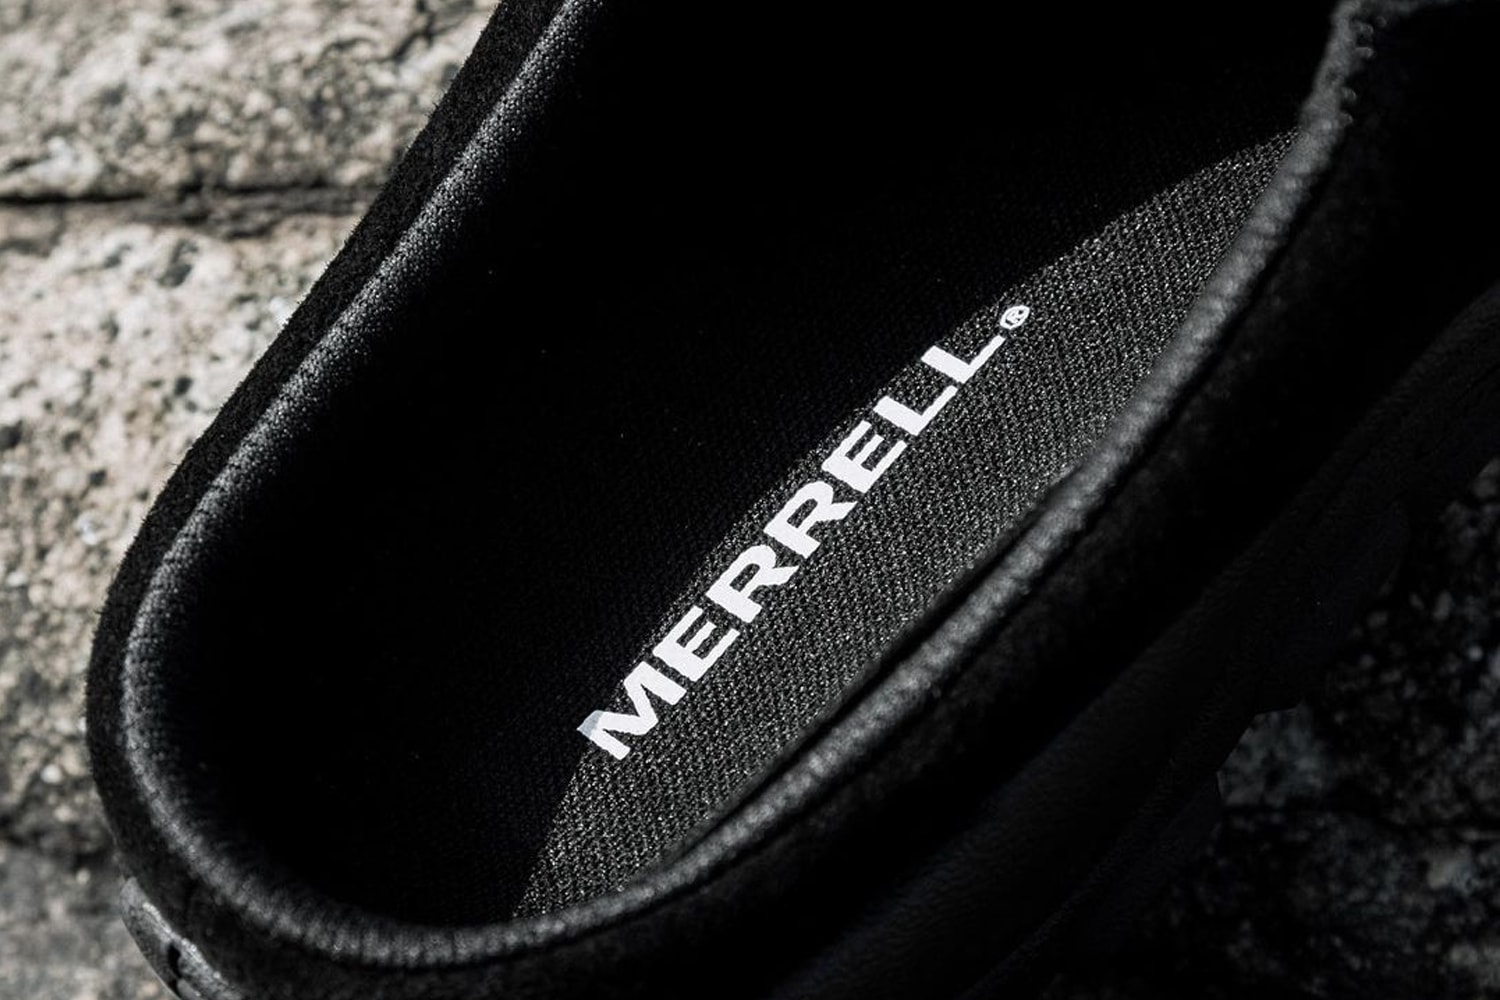 Merrell 人氣戶外鞋款 Hydro Moc 及 Jungle Slide 等系列鞋款正式發佈